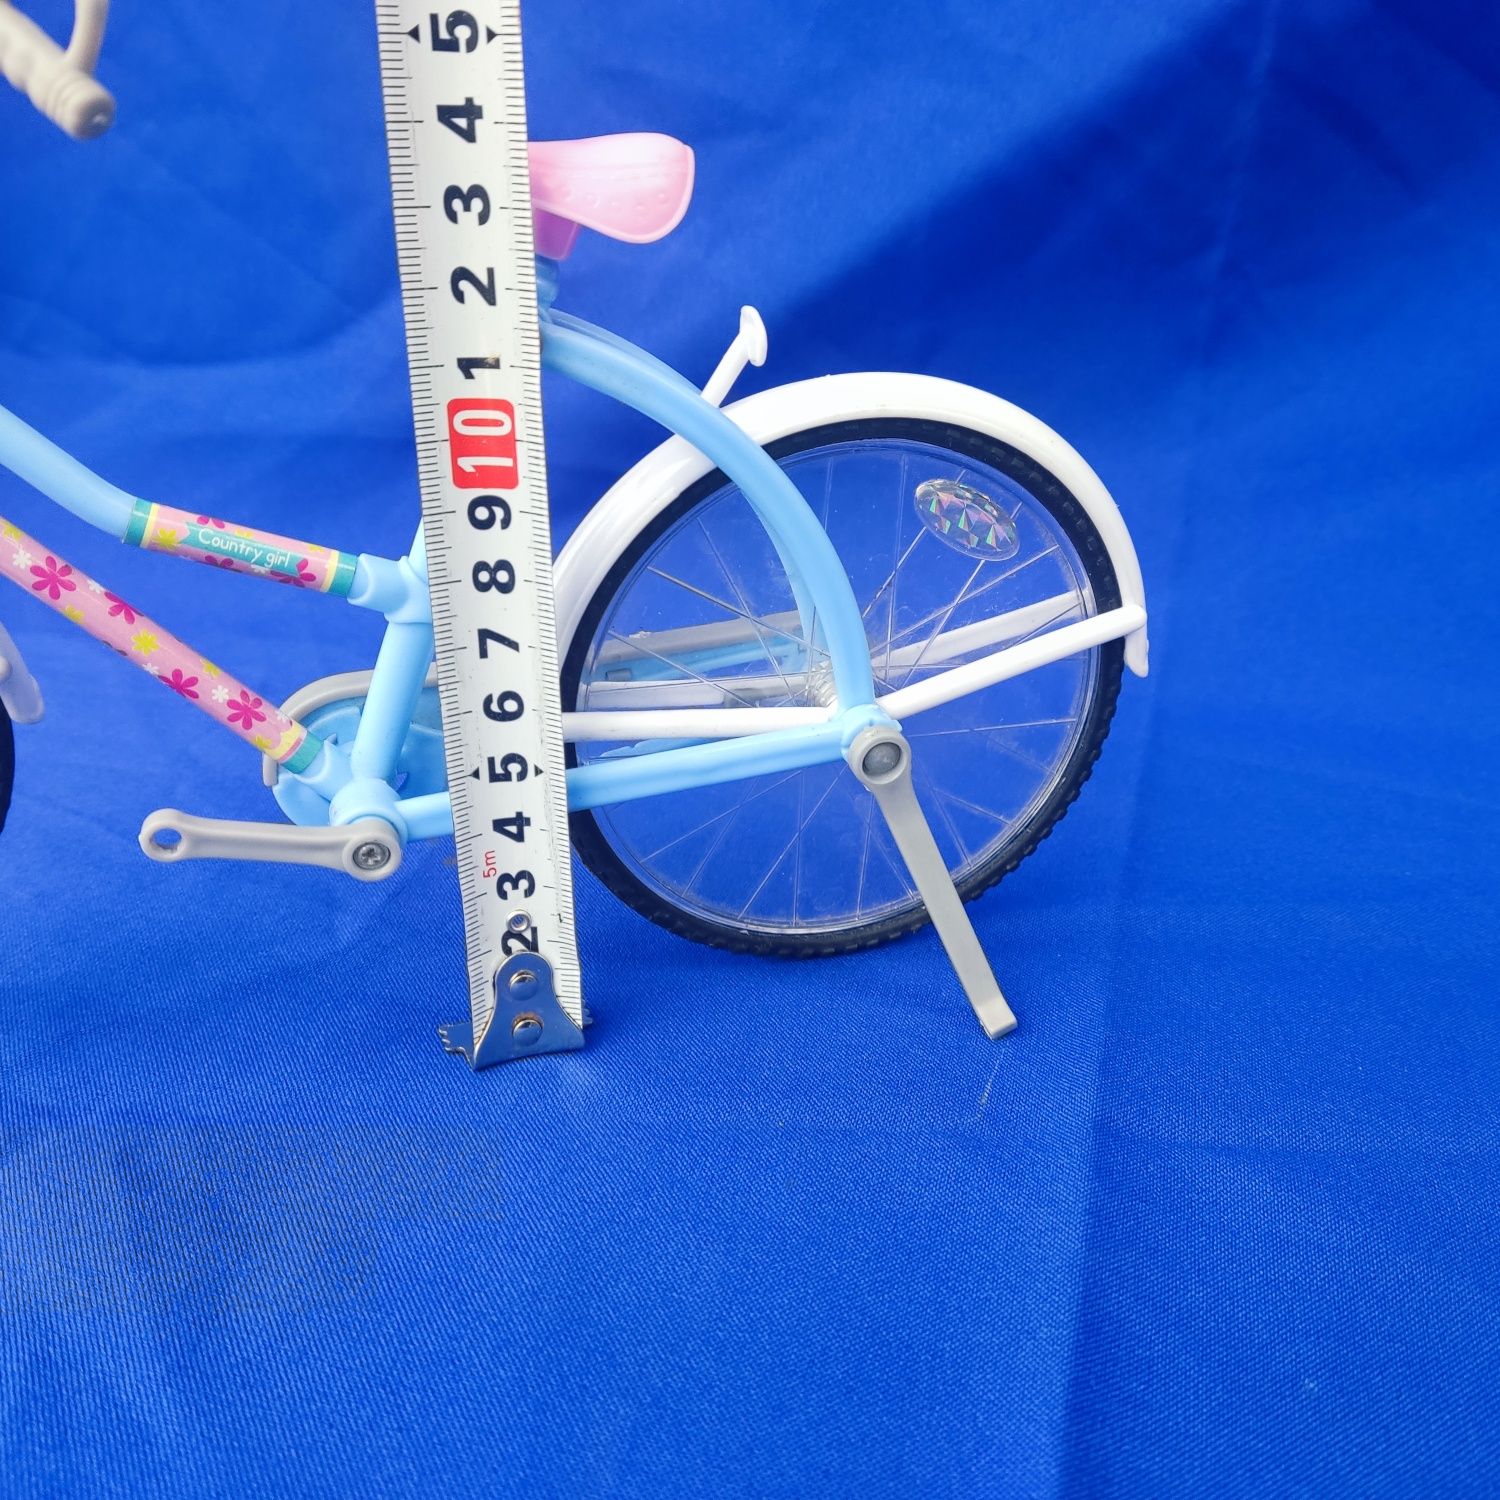 Детская игрушка велосипед для куклы Барби BYL607-1